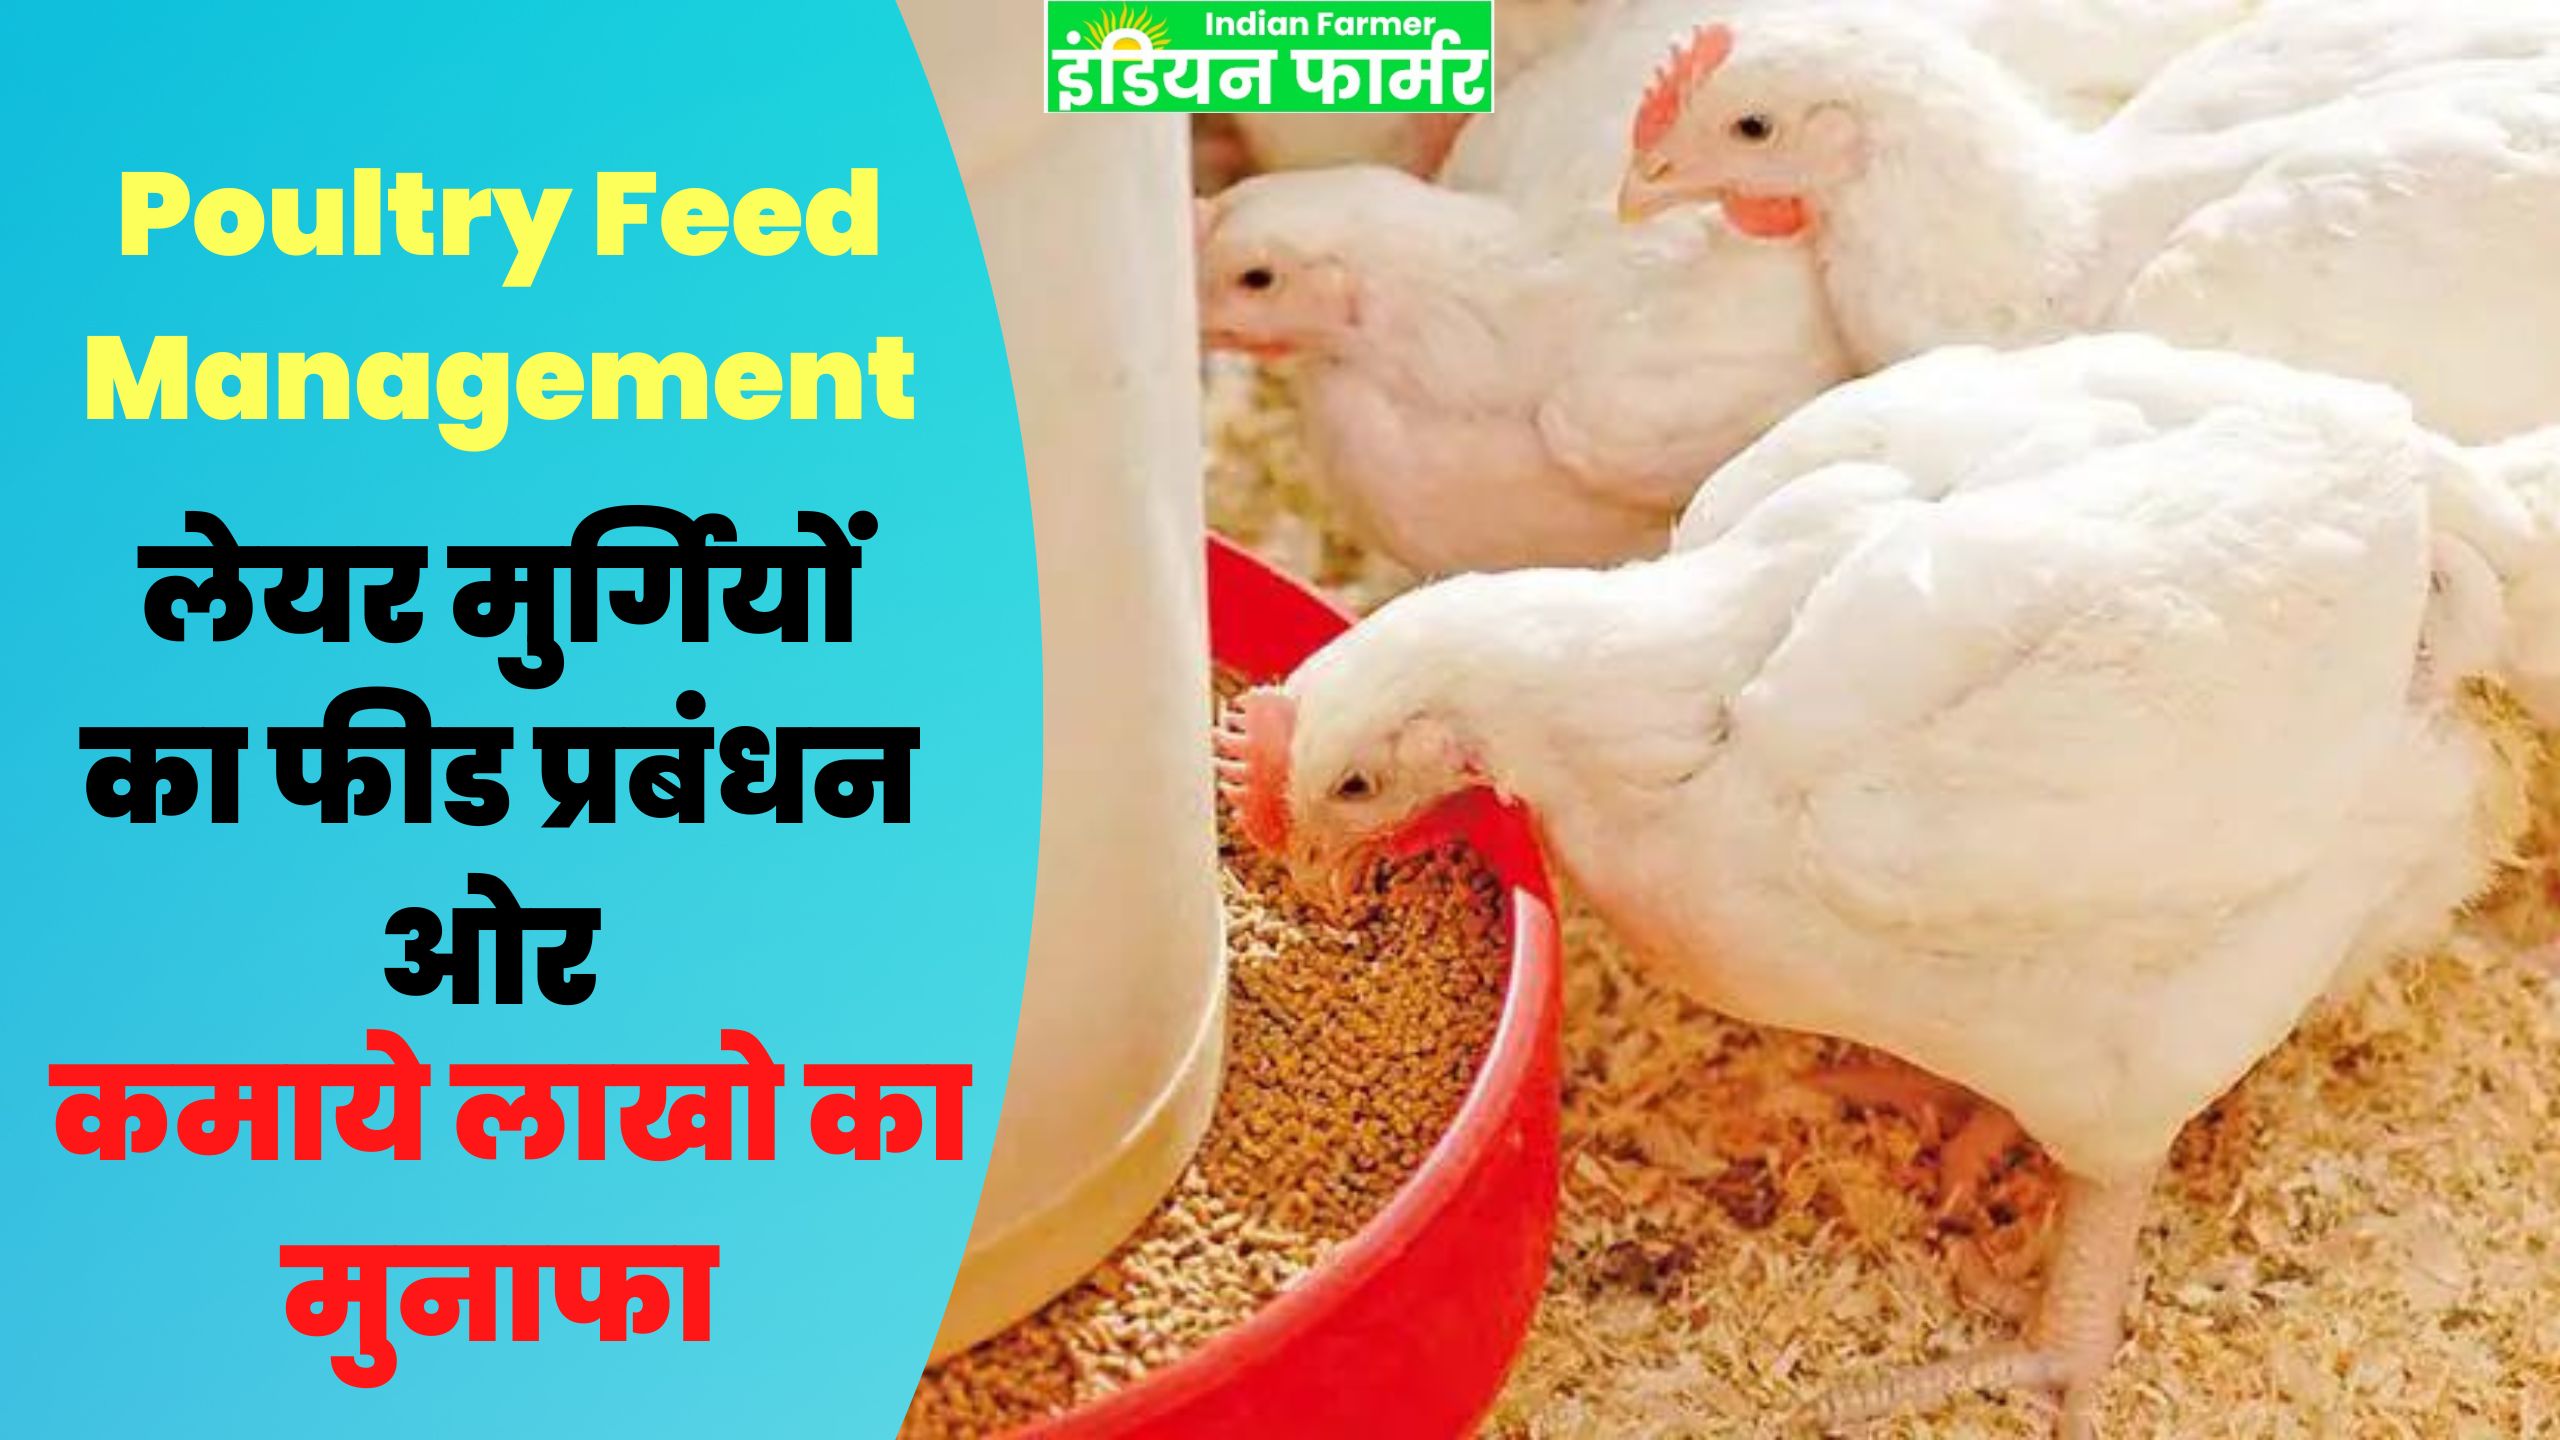 Poultry Feed Management : ऐसे करे लेयर मुर्गियों का फीड प्रबंधन ओर कमाये लाखो का मुनाफा !